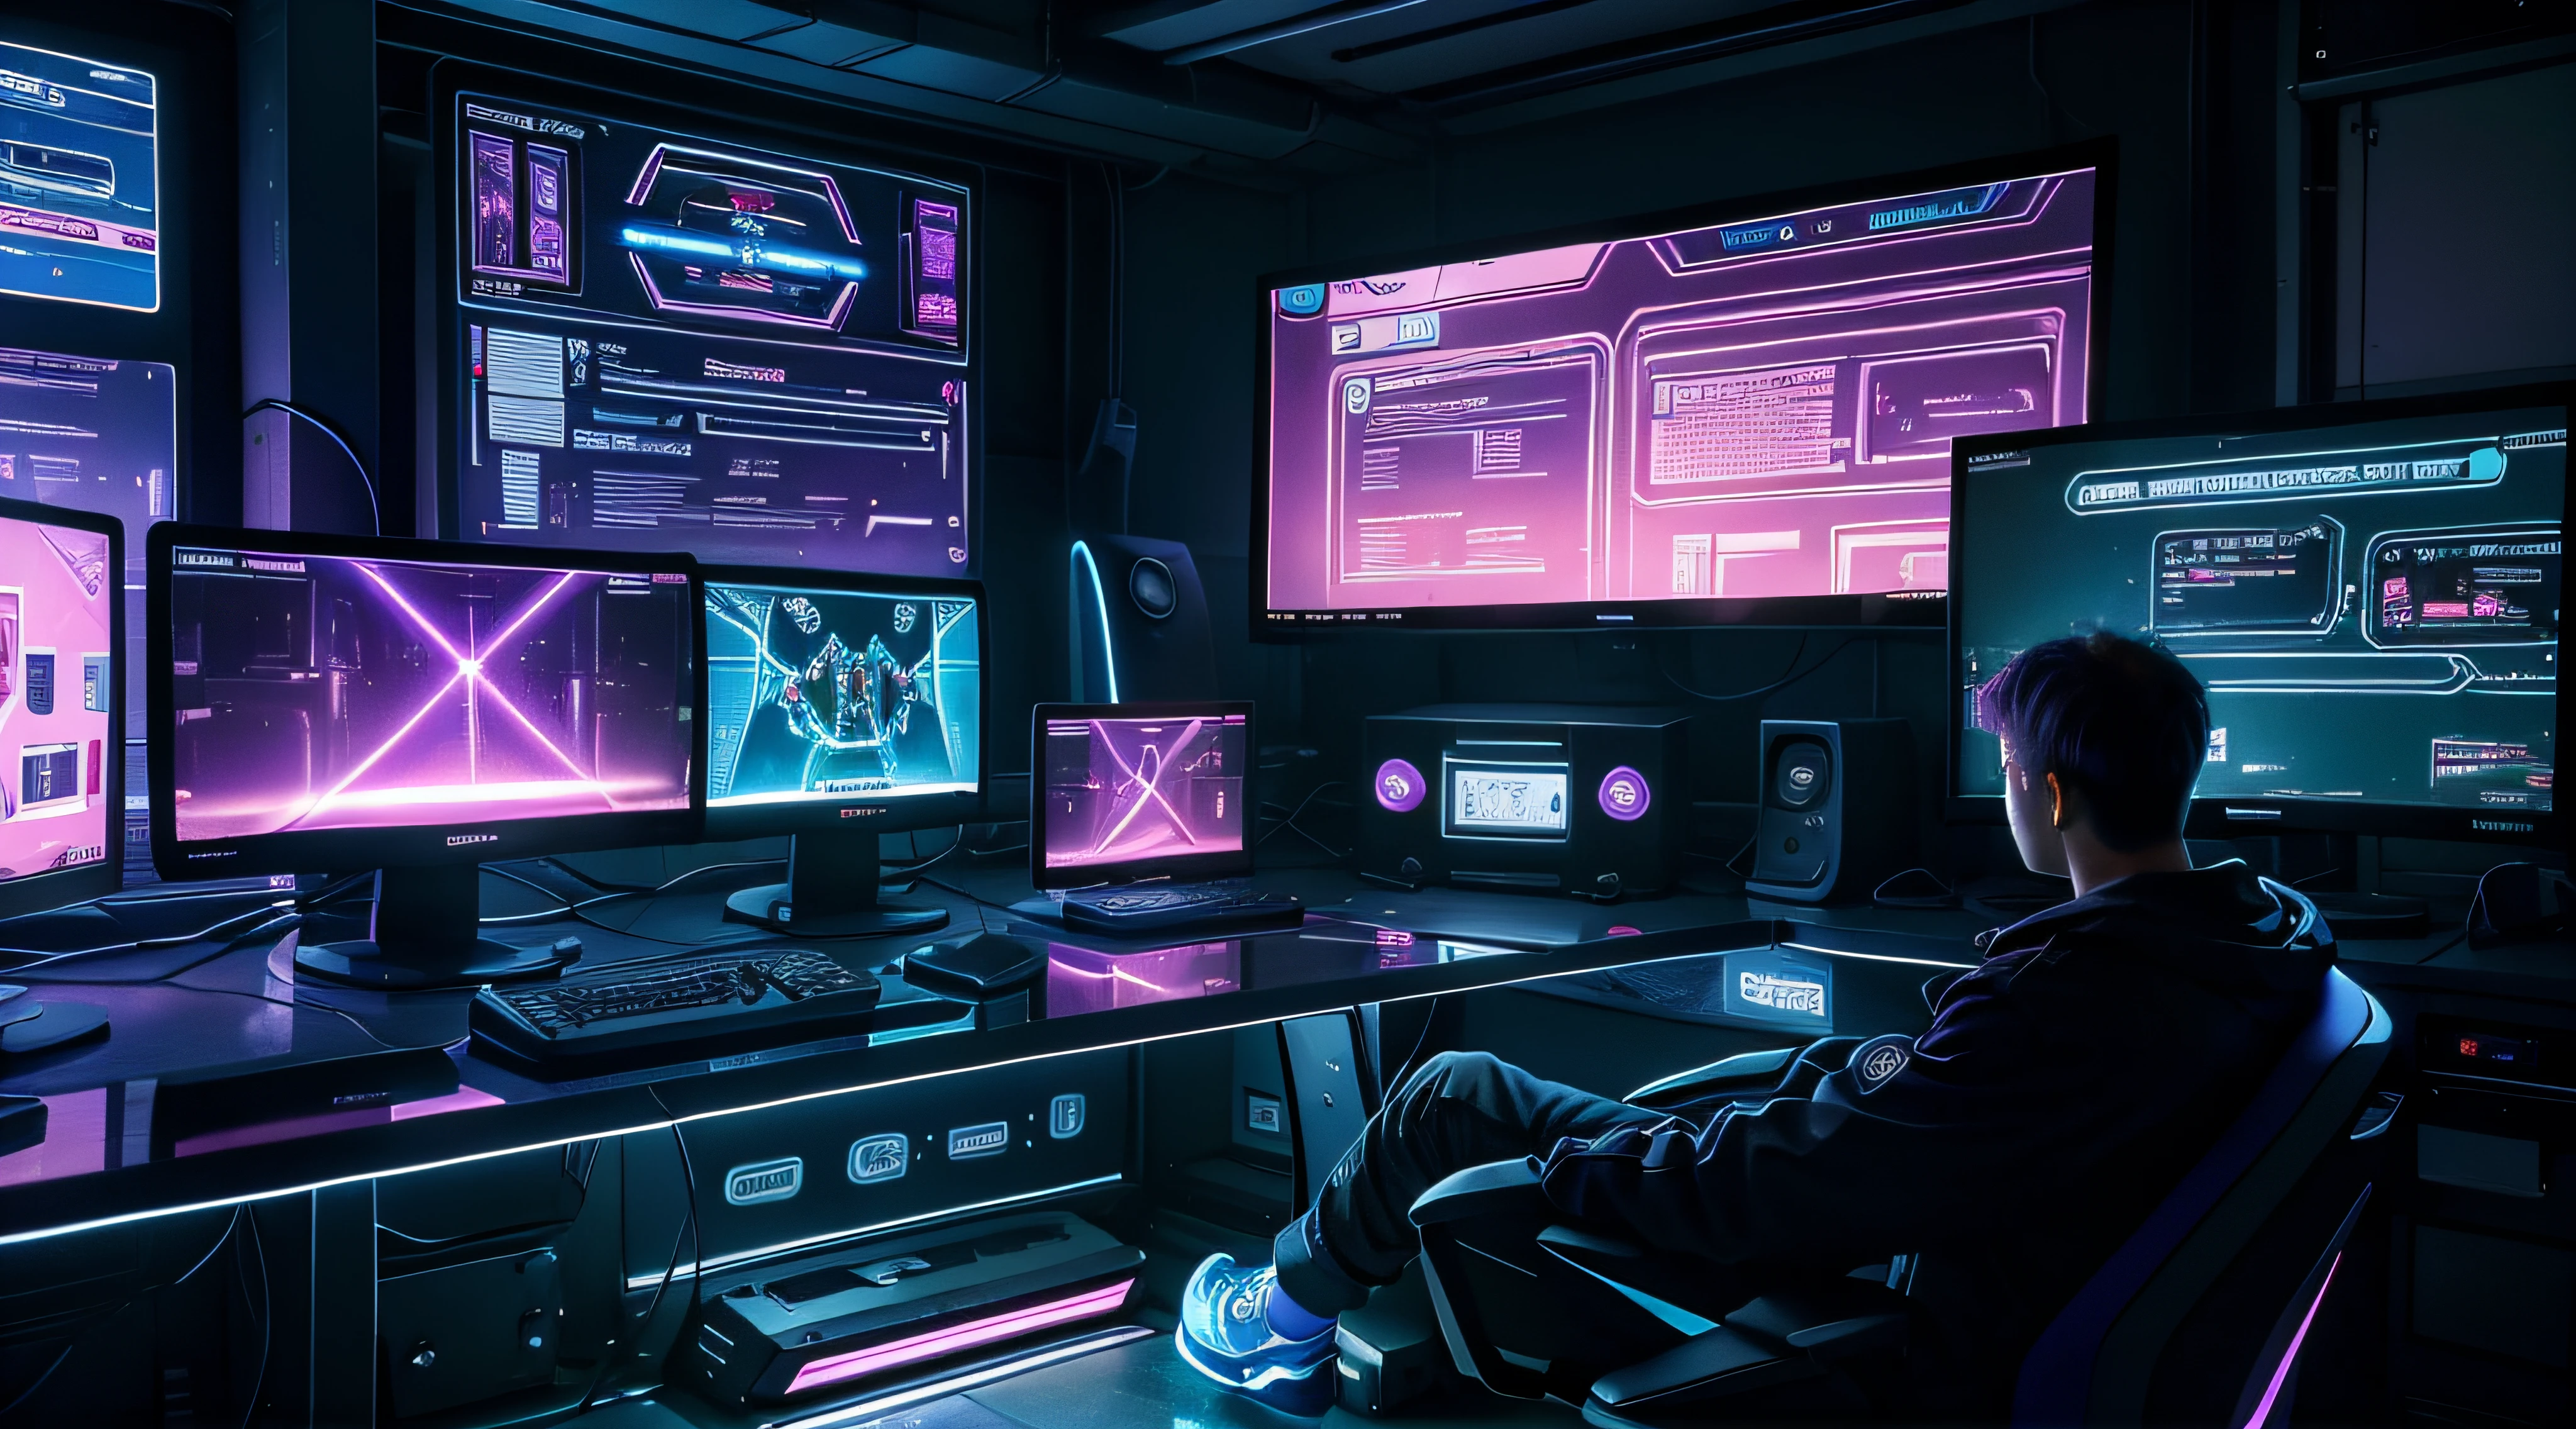 紫色和蓝色霓虹灯游戏电脑桌，配有多台显示器和键盘, 网络霓虹灯, 霓虹灯, 在一个大房间里，有大大的窗户，在阳光明媚的日落, 金属桌面游戏屏幕, 带网页和统计数据的透明屏幕, 带有统计数据的屏幕, 没有人类, 空椅子